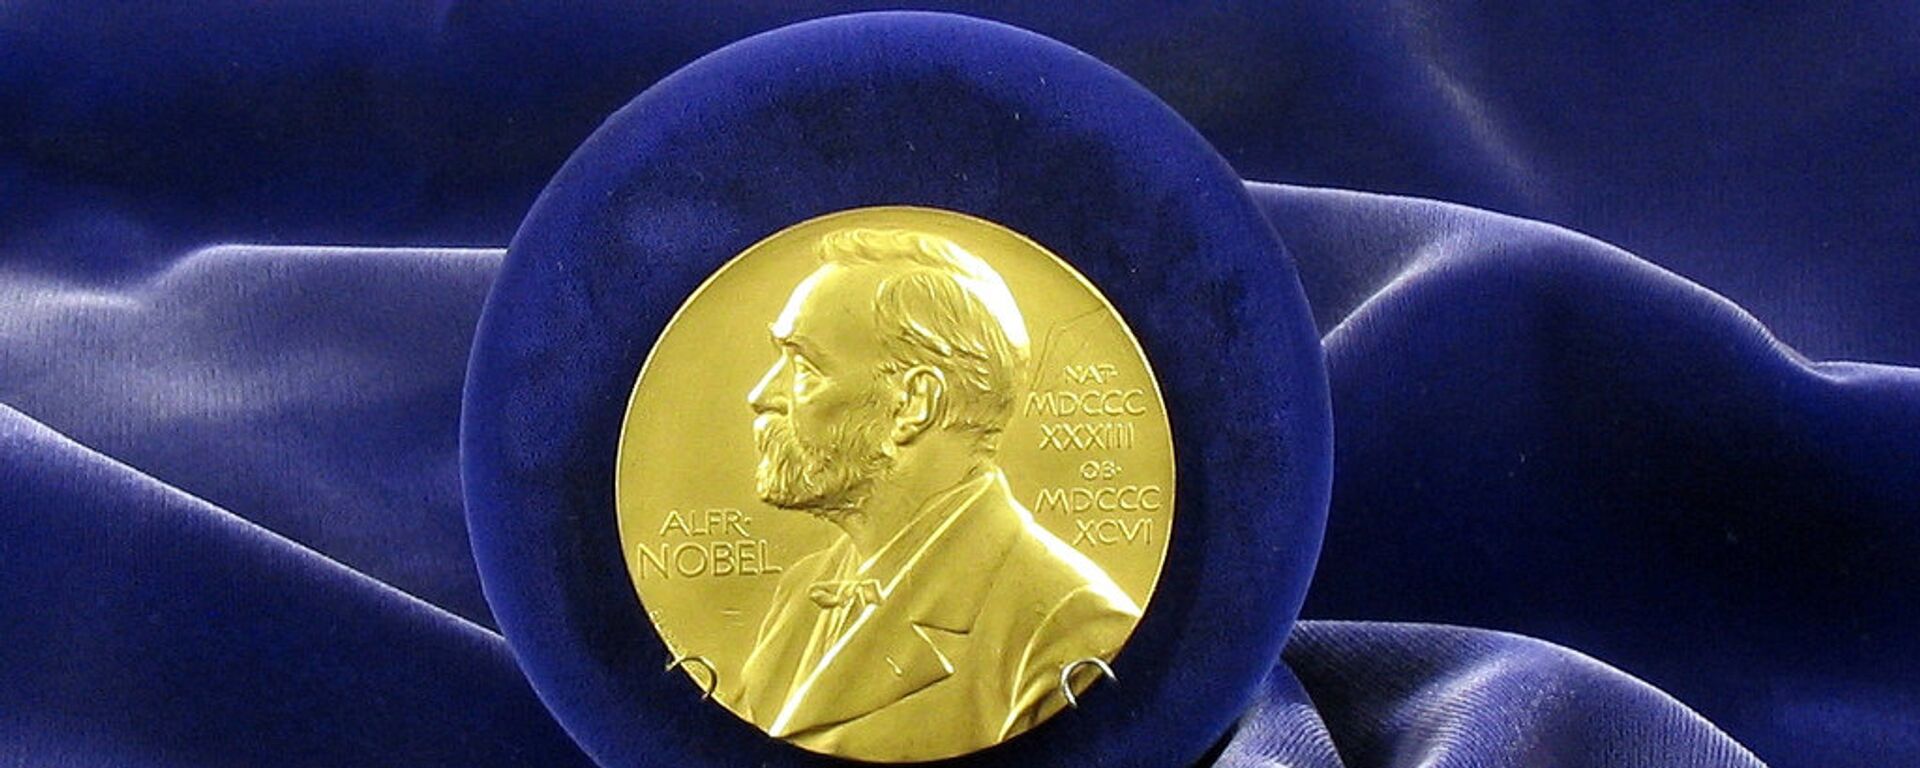  Nobel Prize medal - Sputnik International, 1920, 24.11.2020